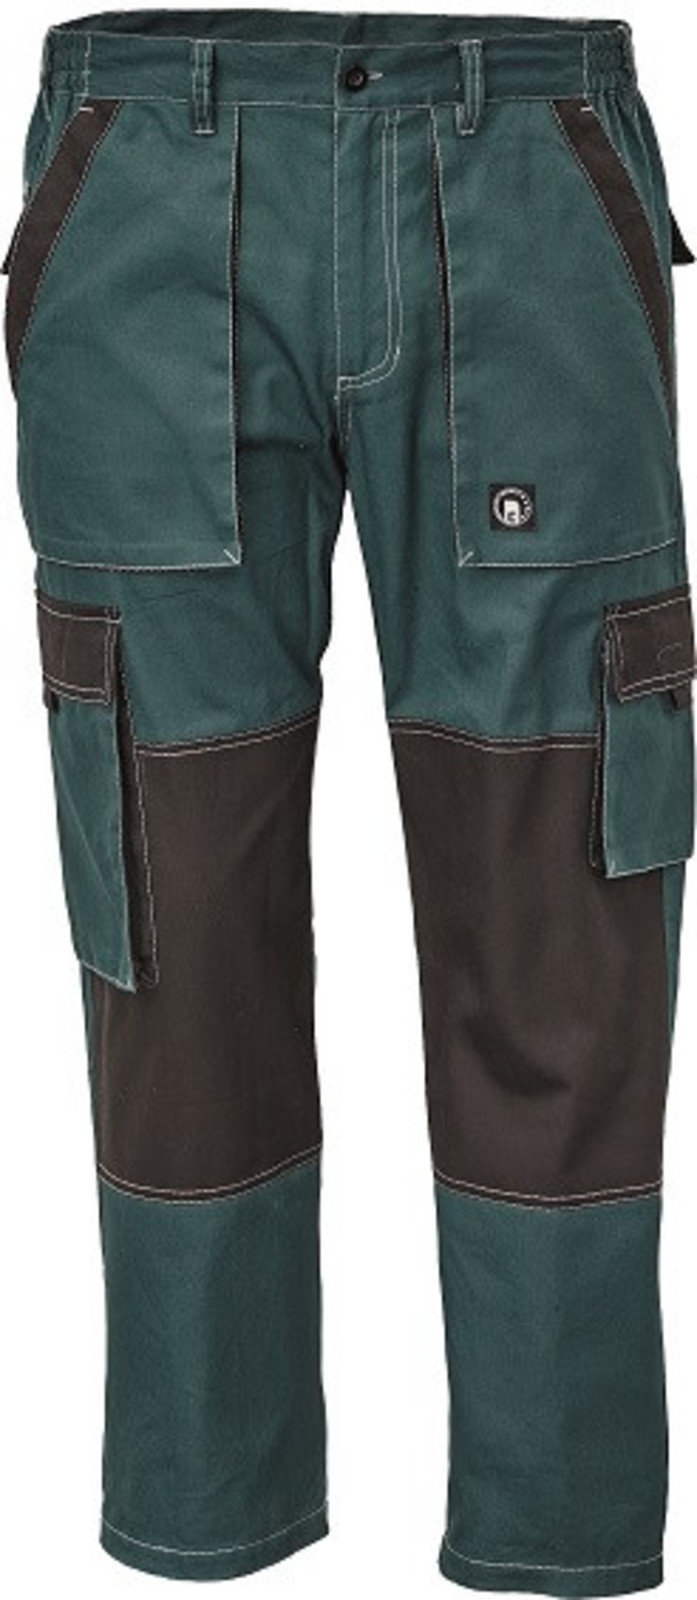 Tenšie bavlnené montérky Max Summer - veľkosť: 64, farba: zelená/čierna